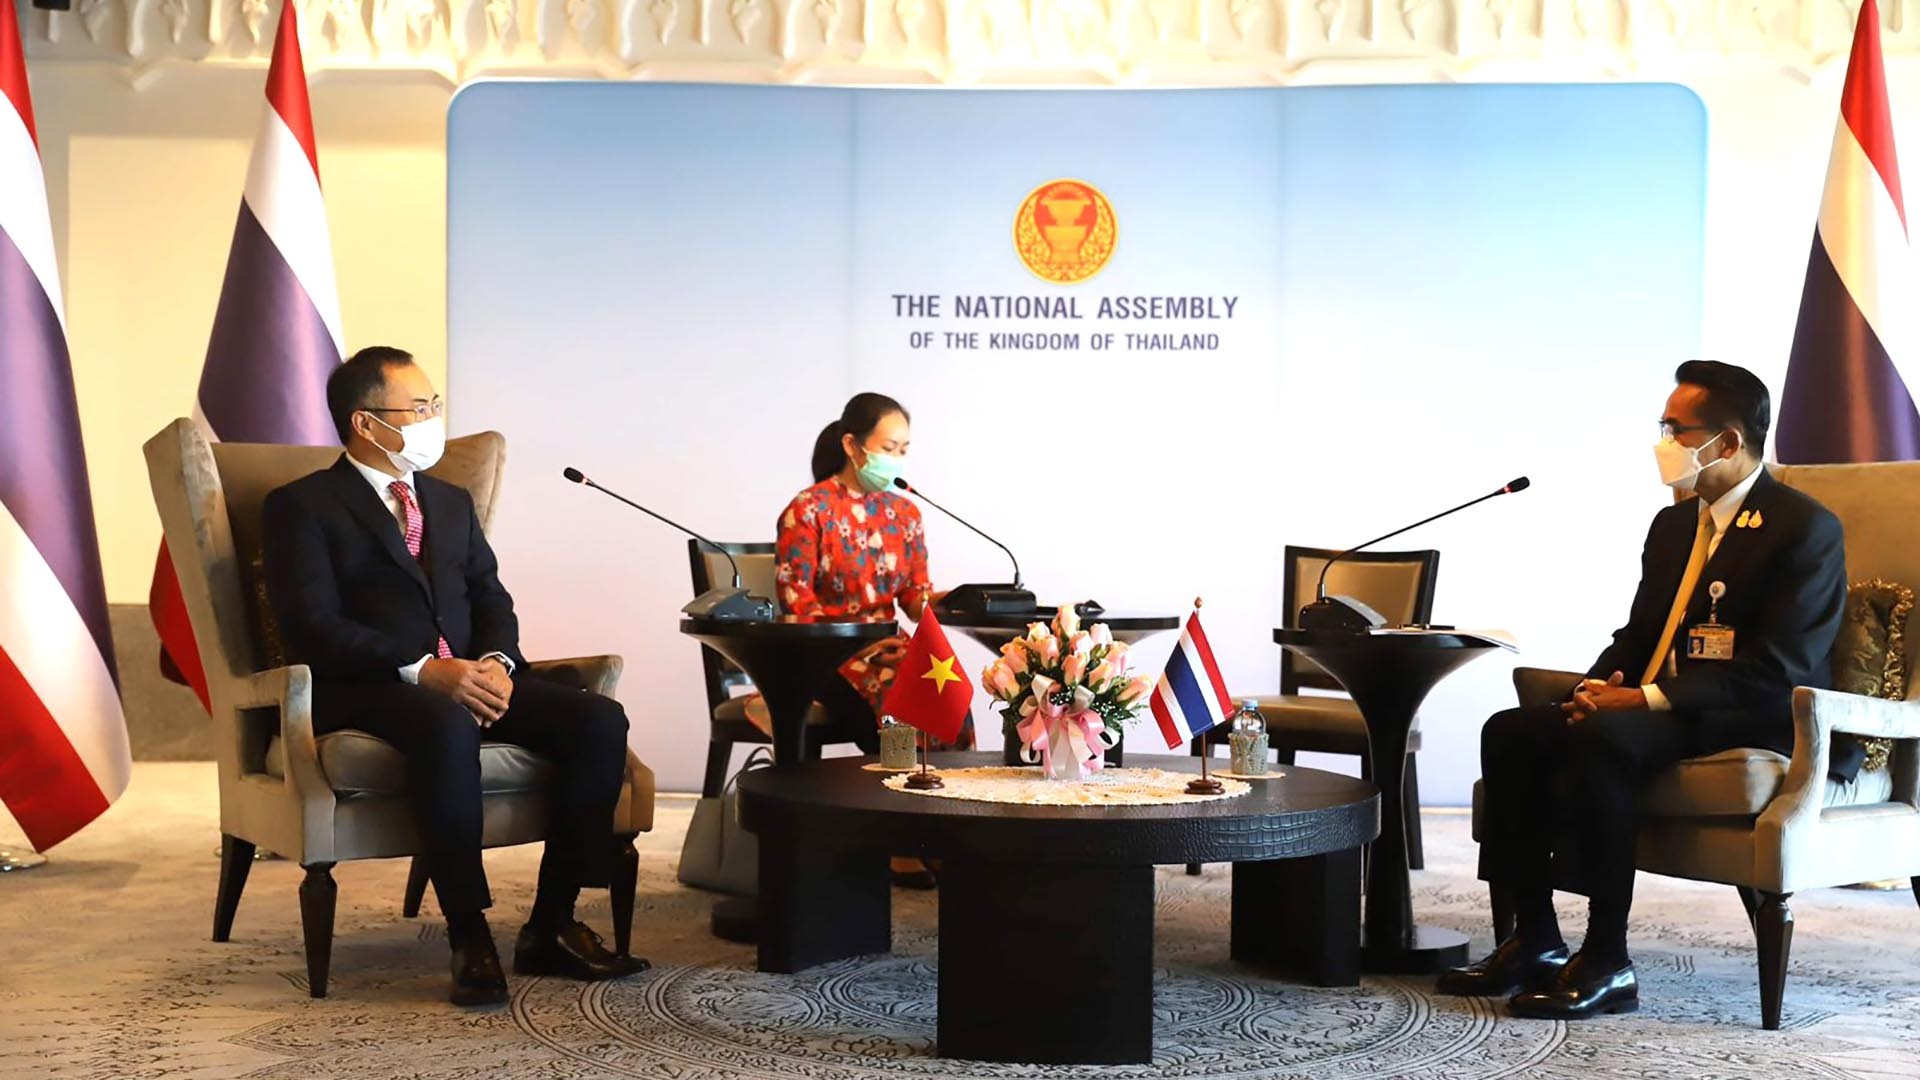 Đại sứ Việt Nam tại Thái Lan Phan Chí Thành chào xã giao và làm việc với Phó Chủ tịch Hạ viện Thái Lan Supachai Phosu.